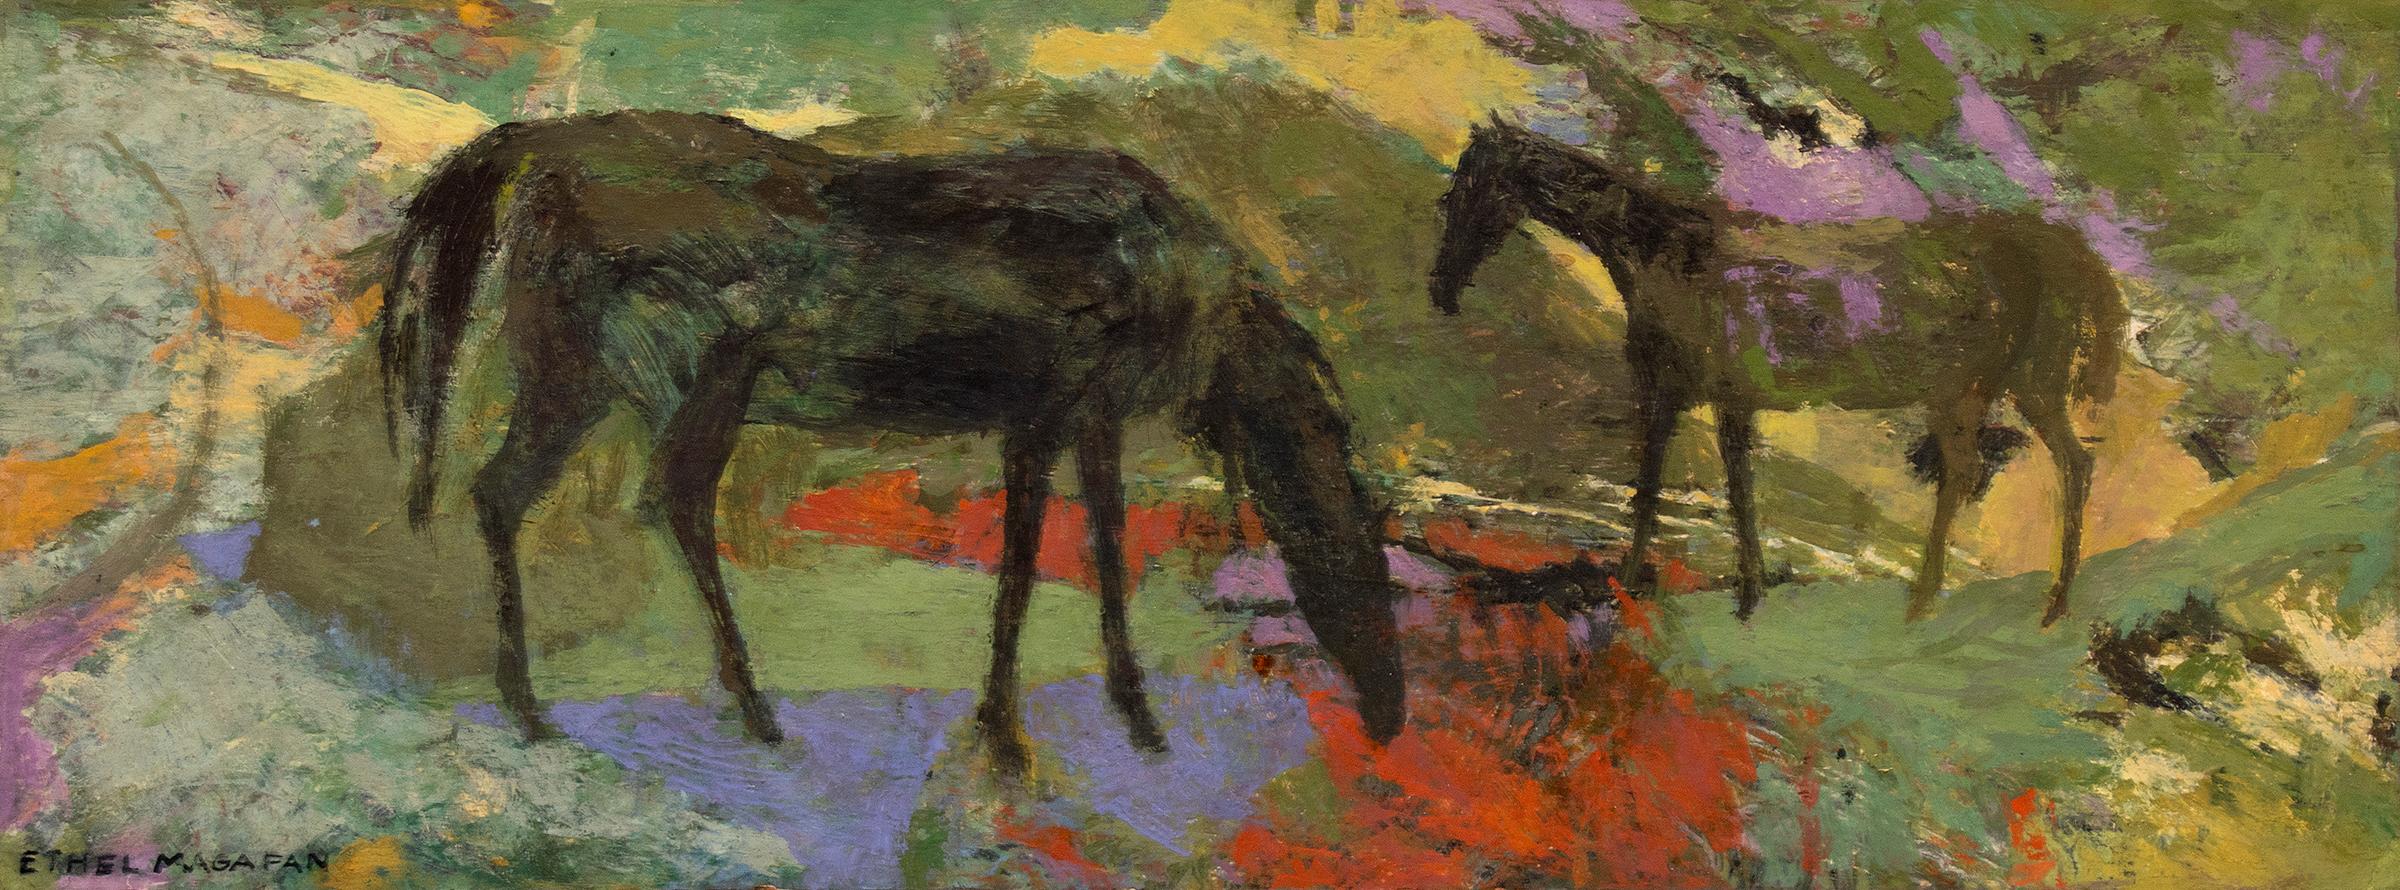 Deux chevaux, peinture semi-abstraite de Tempera encadrée, paysage de chevaux figuratifs - Painting de Ethel Magafan